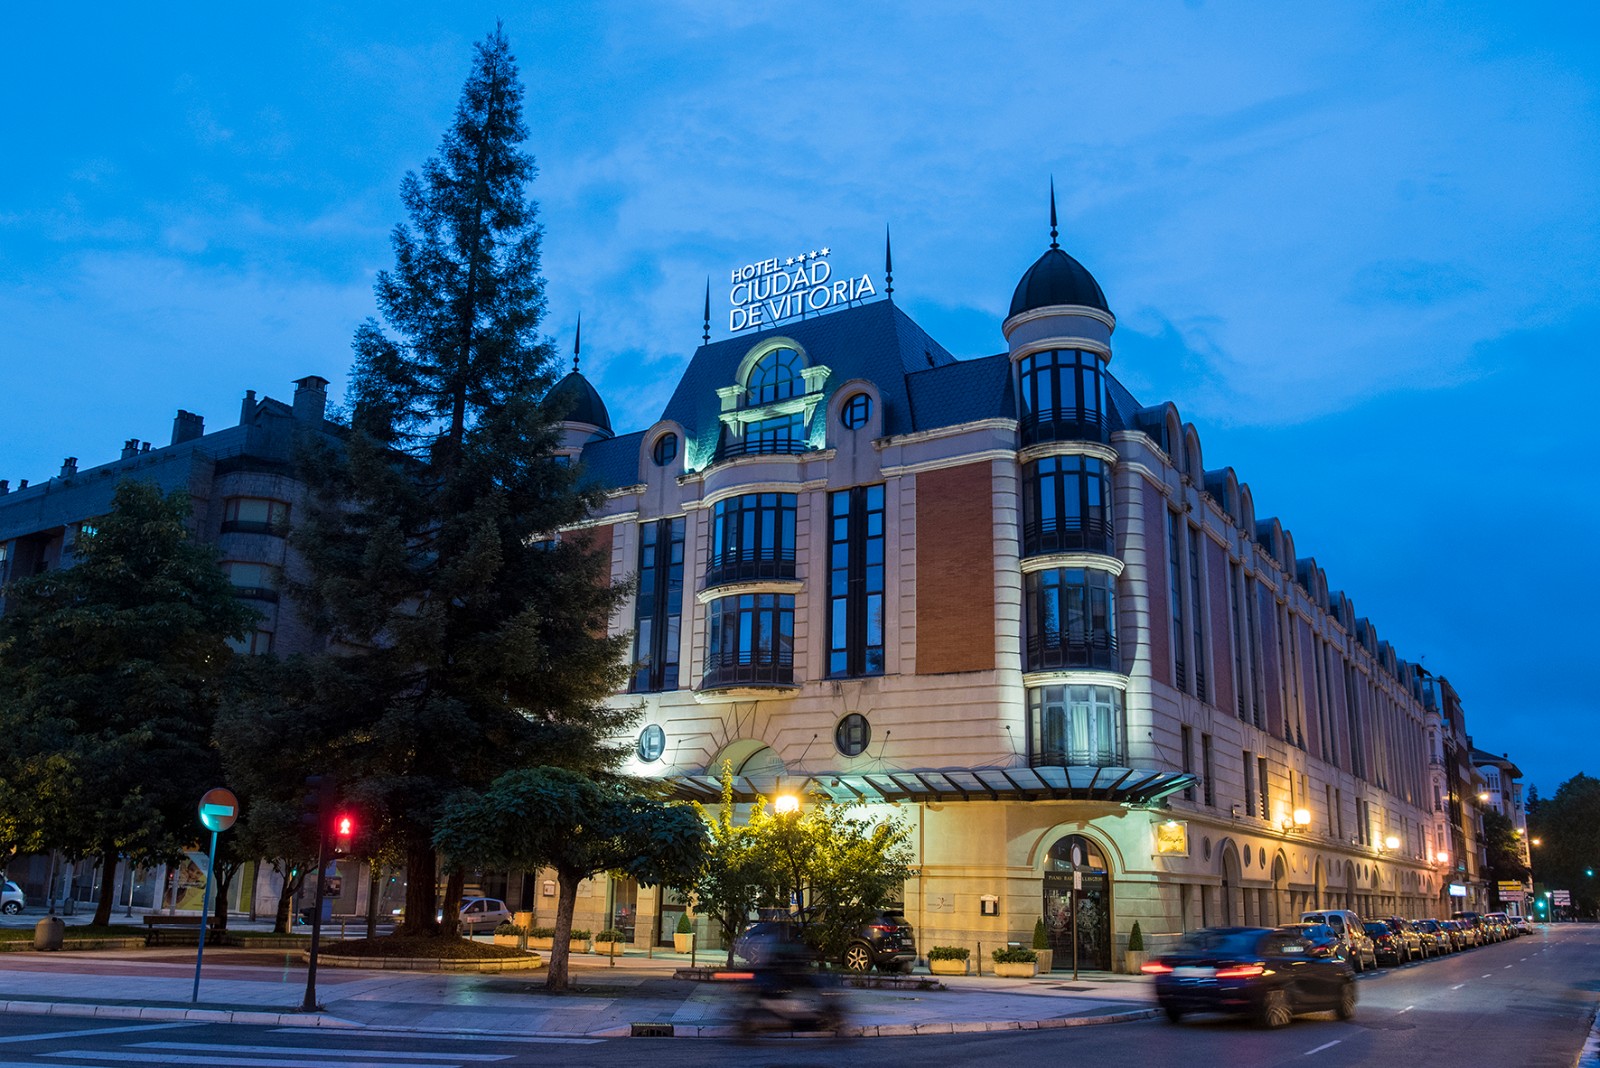 Hotel Silken Ciudad De Vitoria